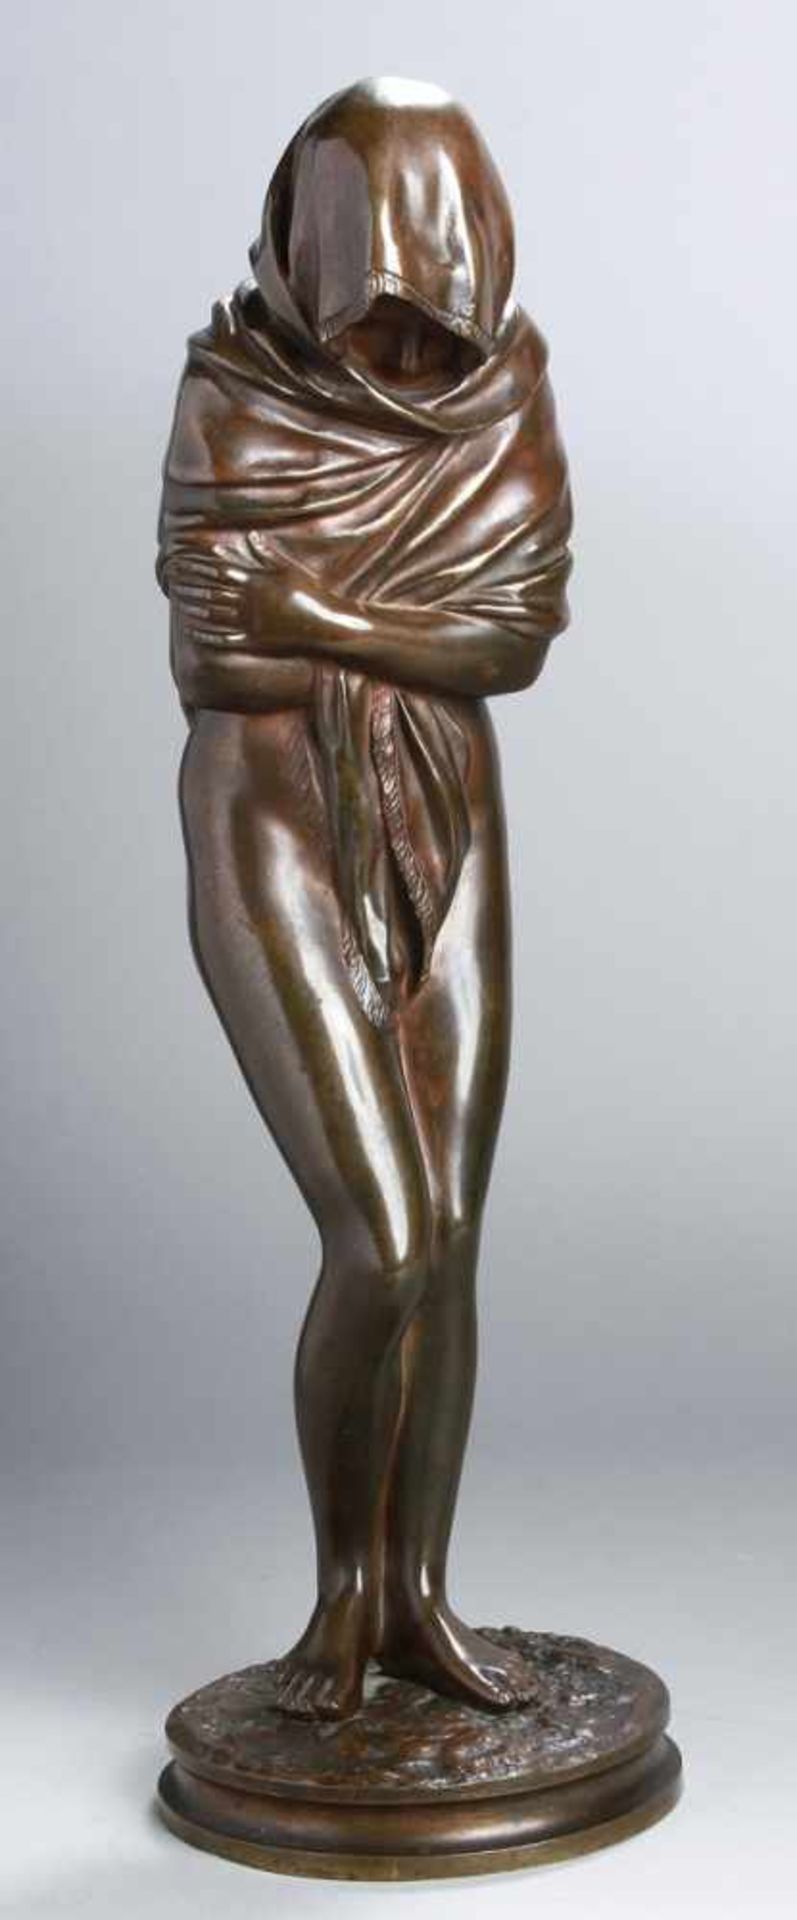 Jugendstil Bronze Figur, "Weiblicher Halbakt", Réne, wohl französischer Bildhauer,vollplastische